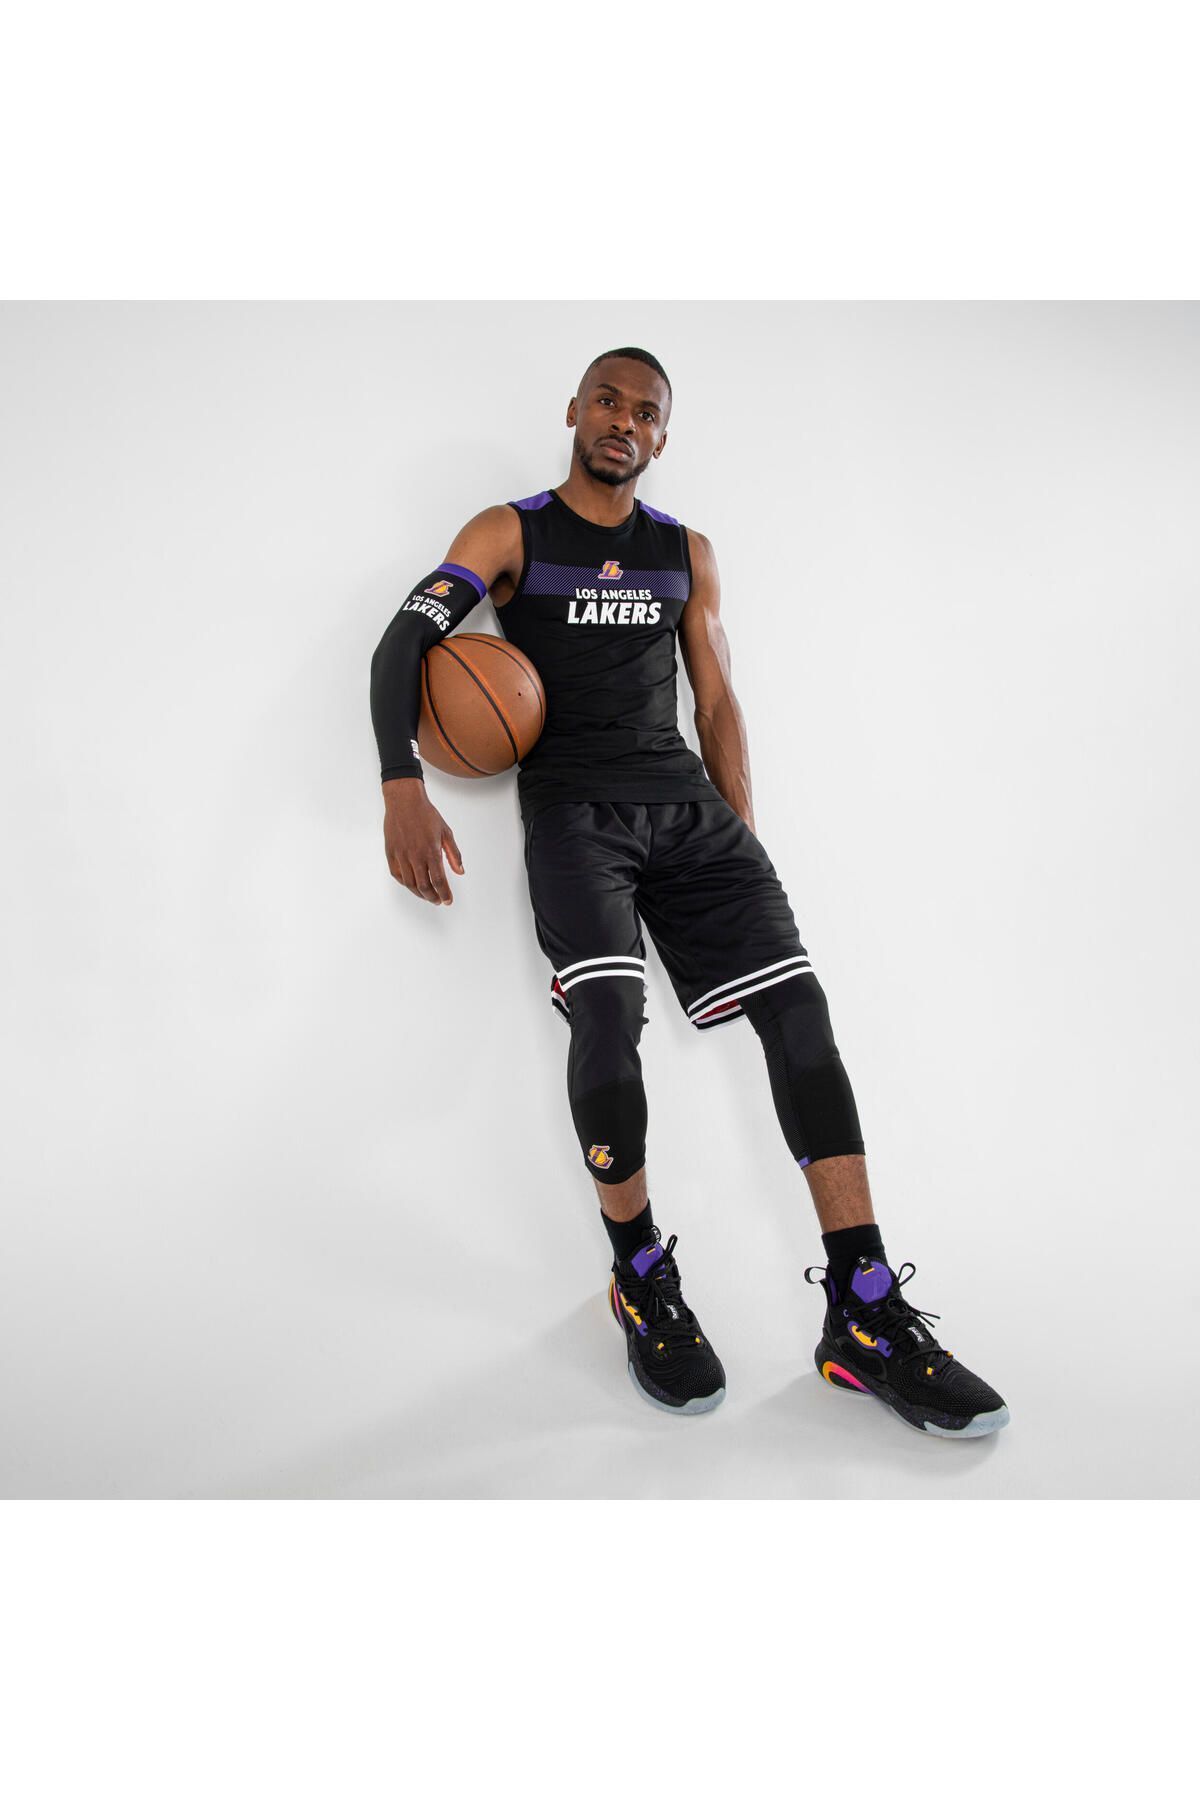 Decathlon Nba Los Angeles Lakers Erkek Basketbol Içliği - Siyah - Ut500